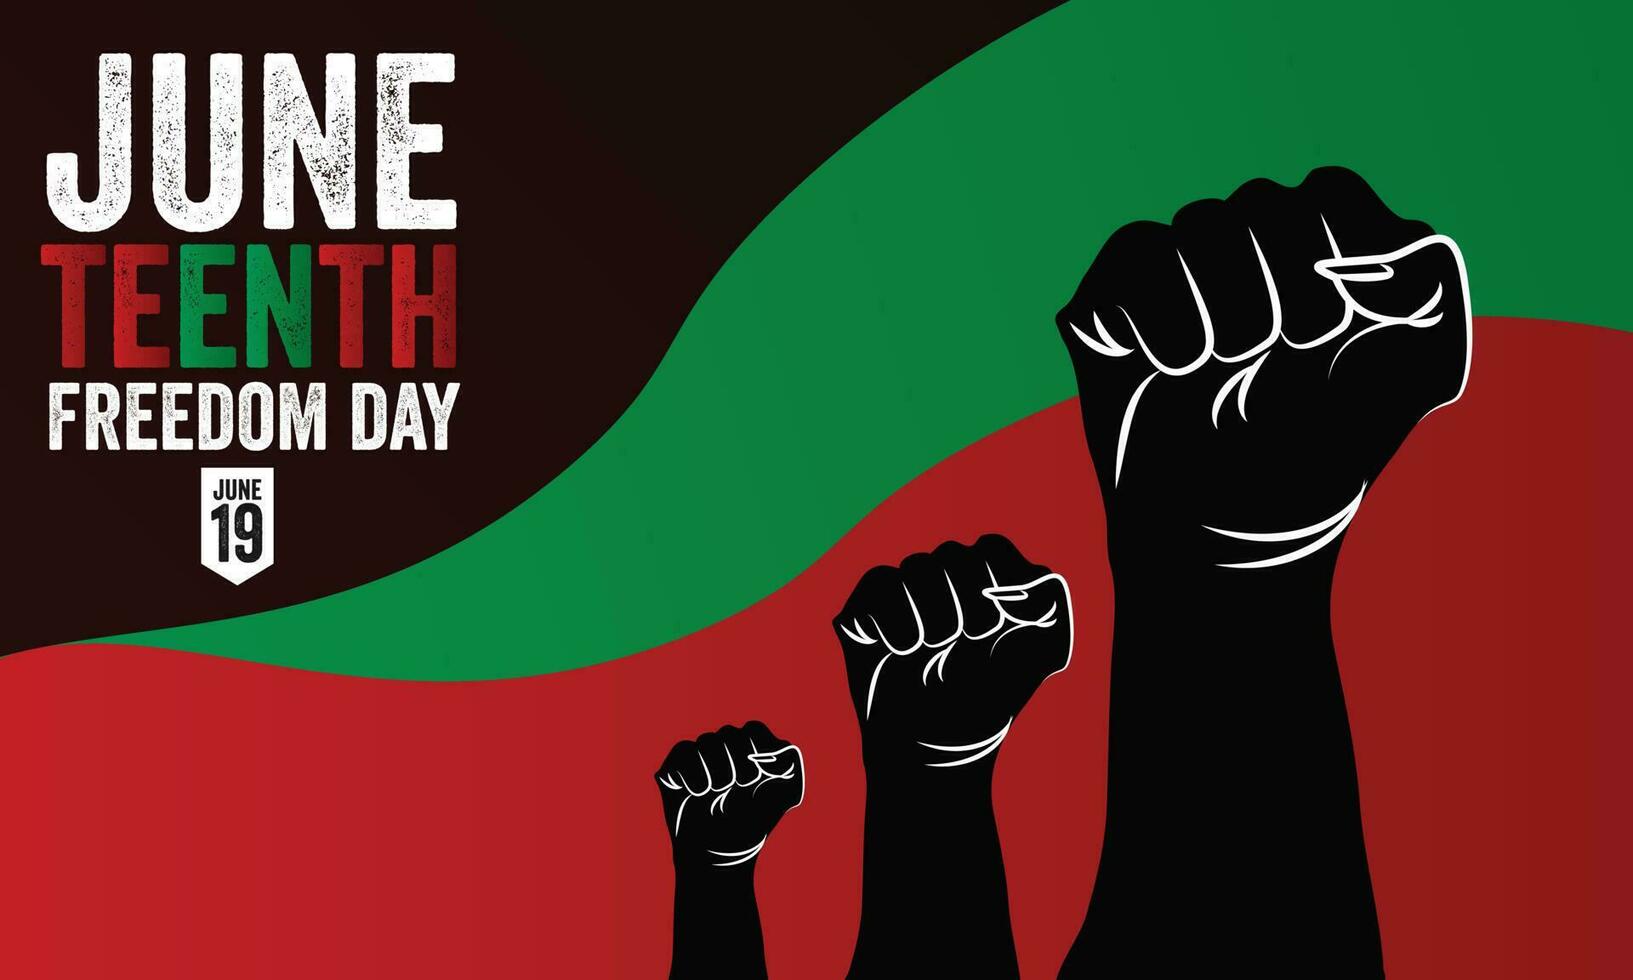 juneteenth dag, viering vrijheid, emancipatie dag in 19 juni, Afro-Amerikaans geschiedenis en erfenis. vector